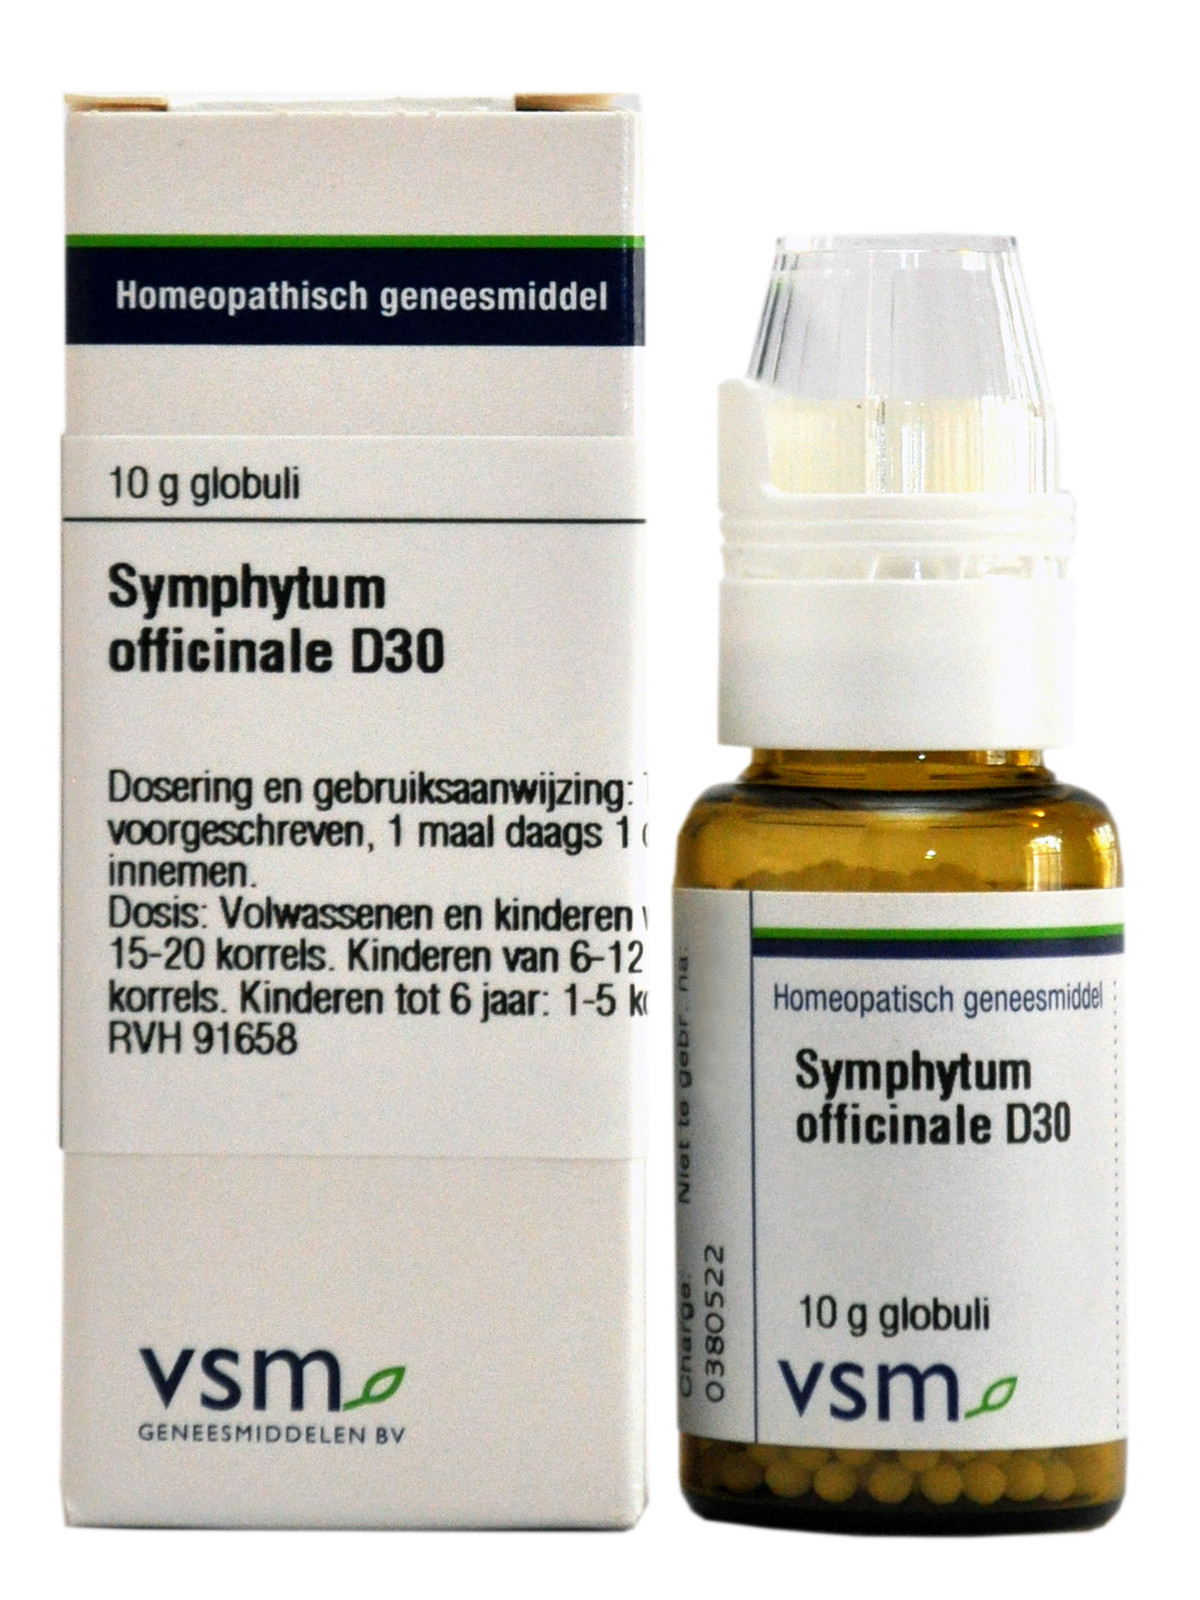 Symphytum officinale D30 korrels